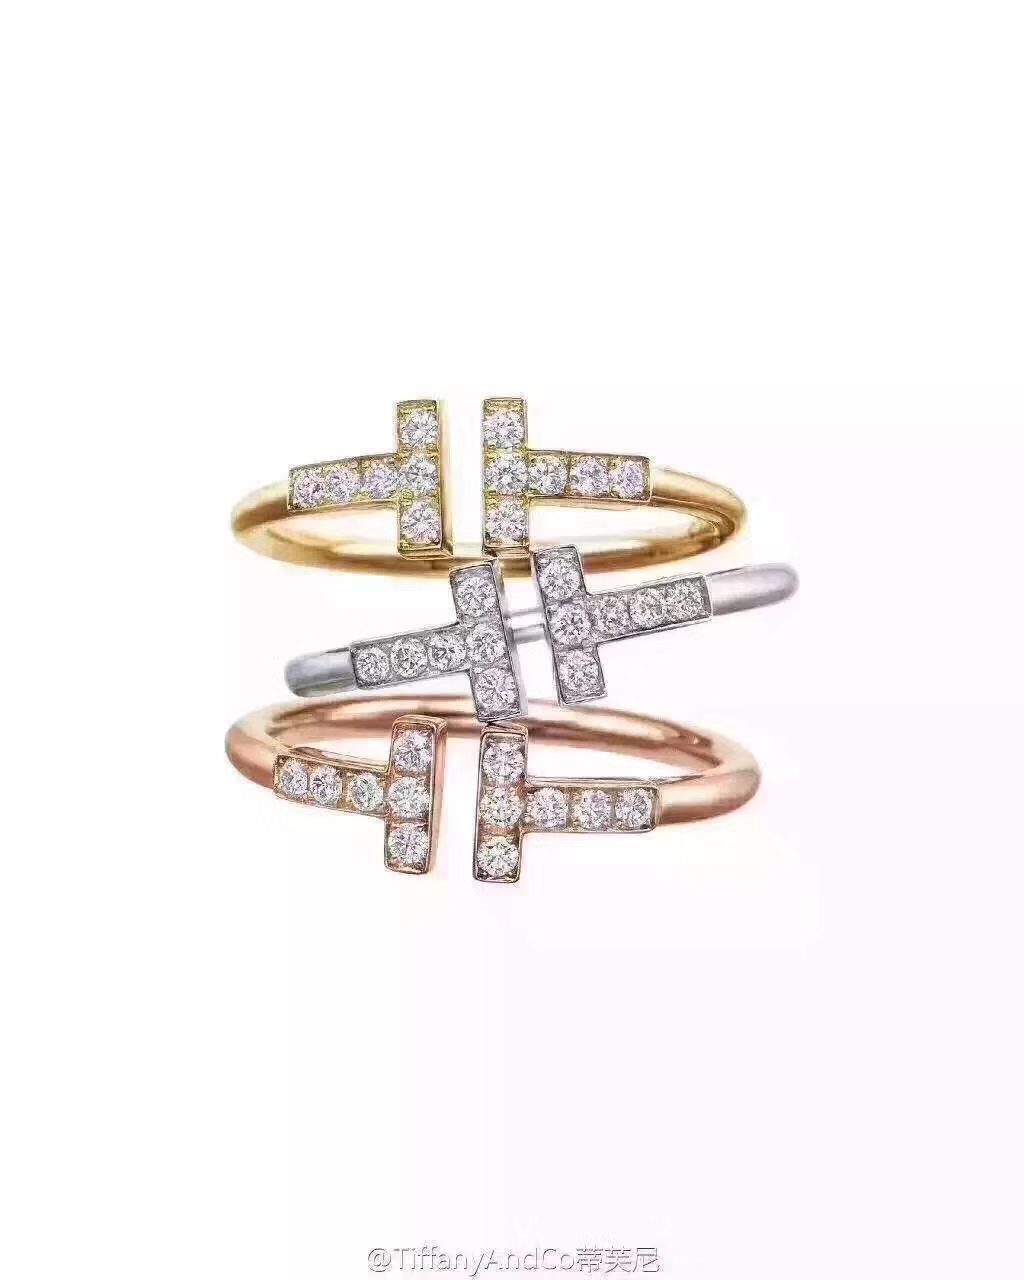 Tiffany & co ring